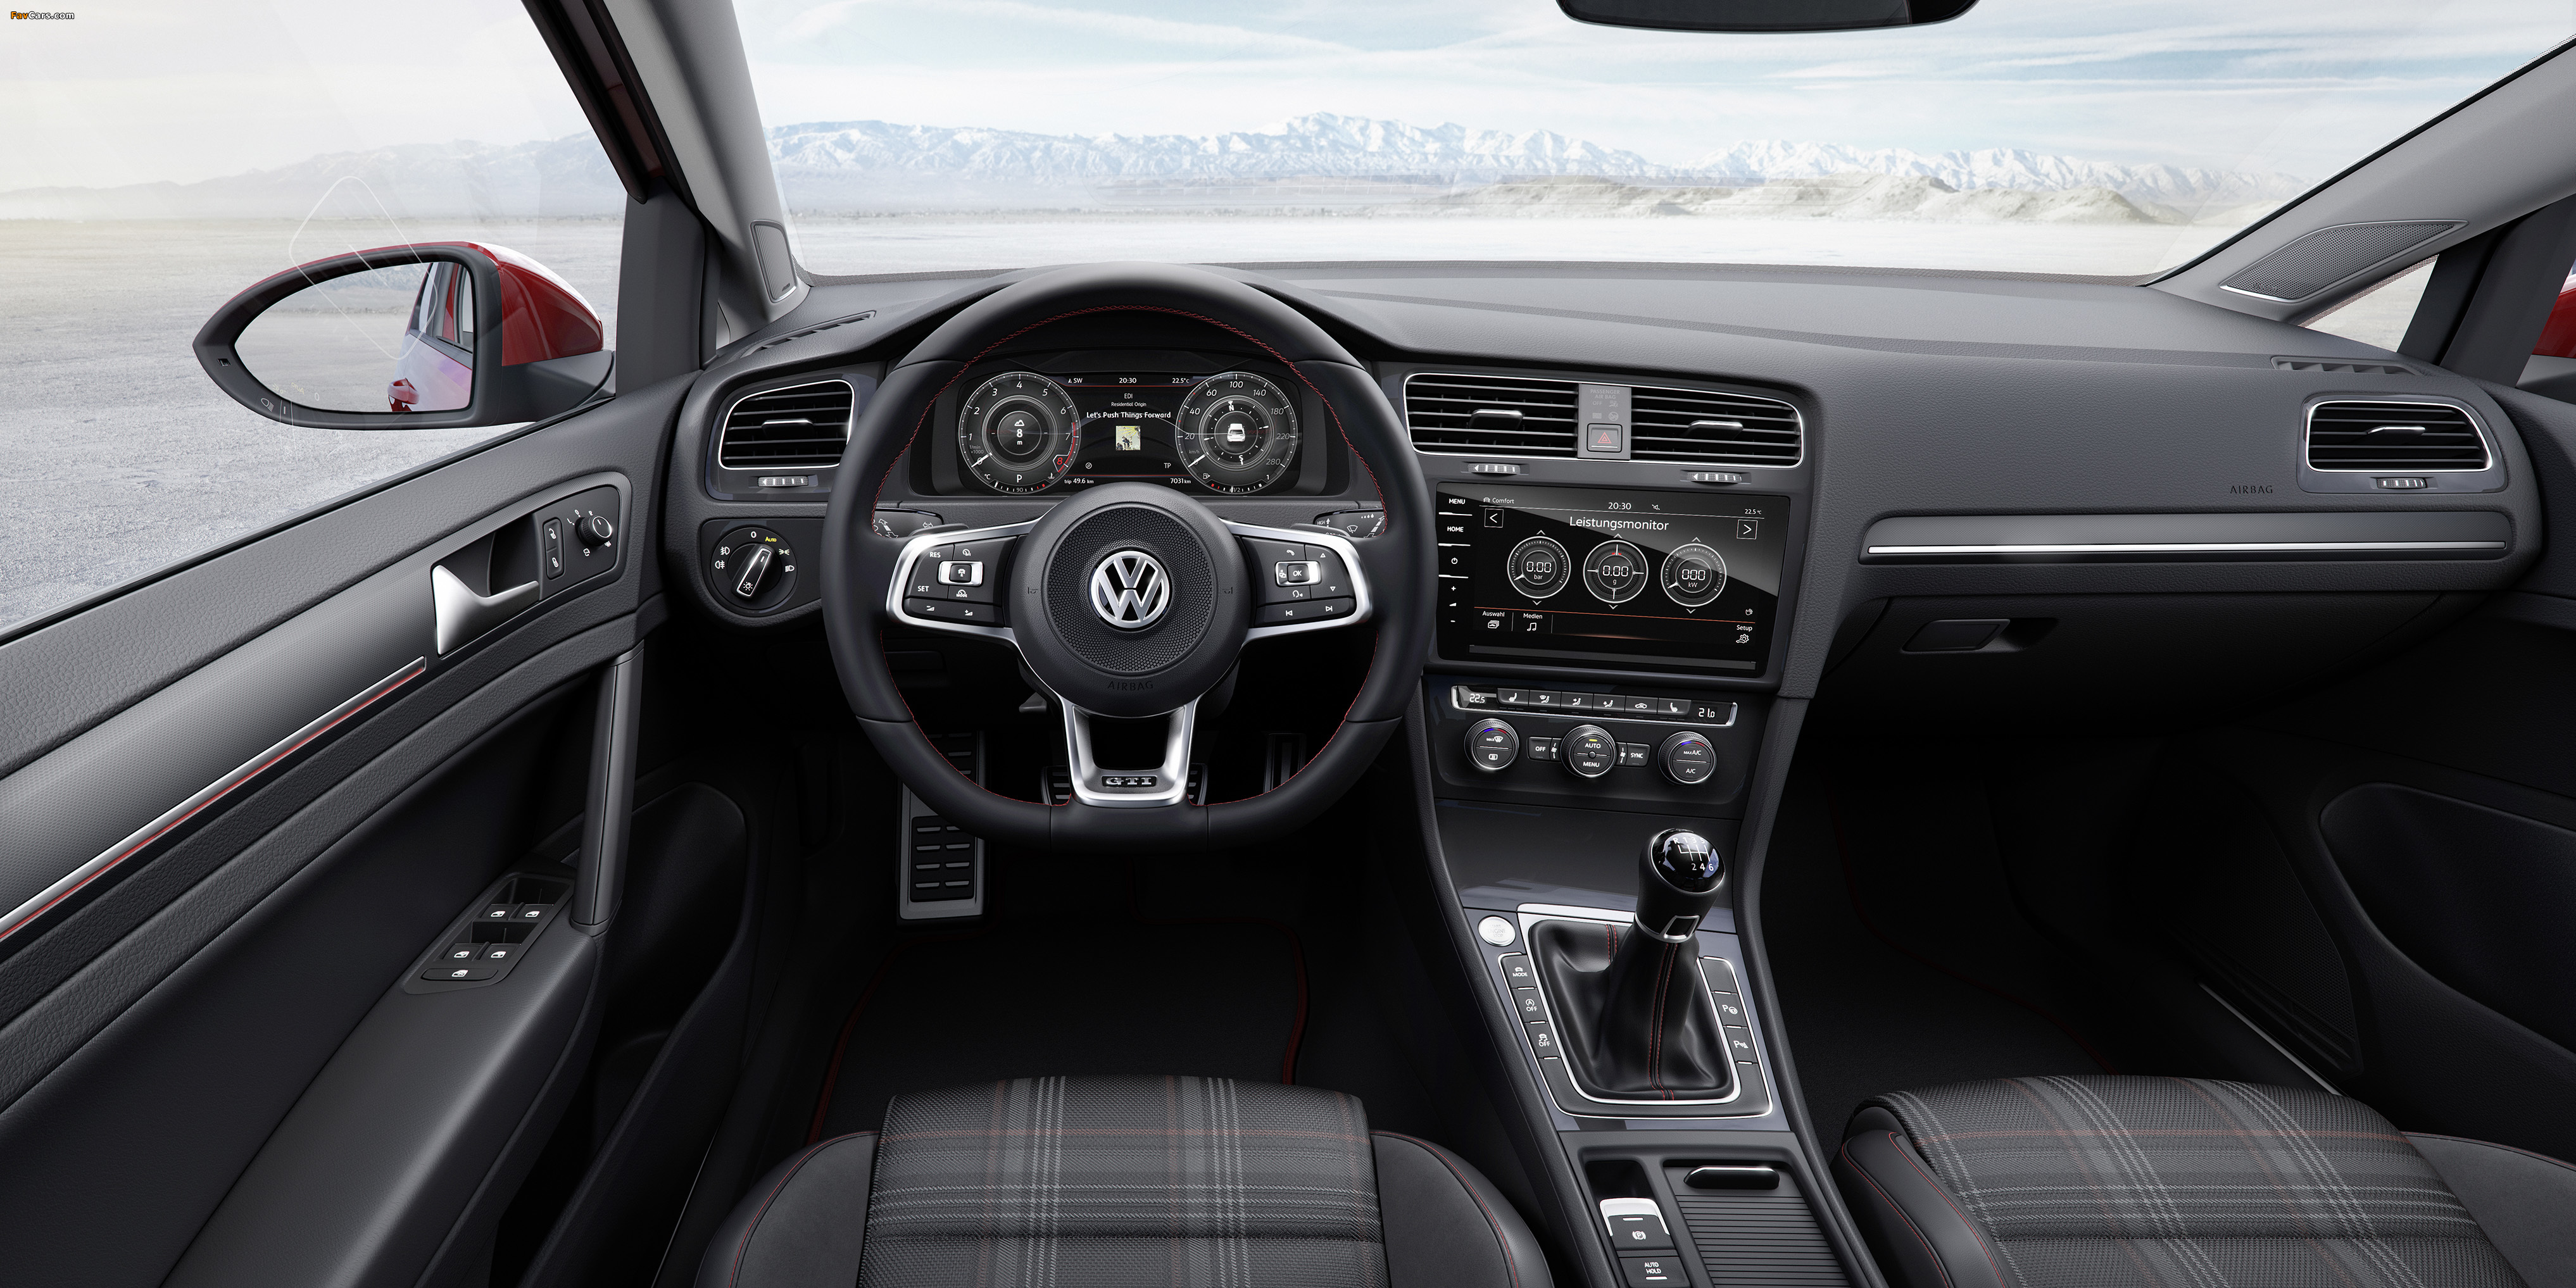 Volkswagen Golf GTI 3-door (Typ 5G) 2017 images (4069 x 2035)